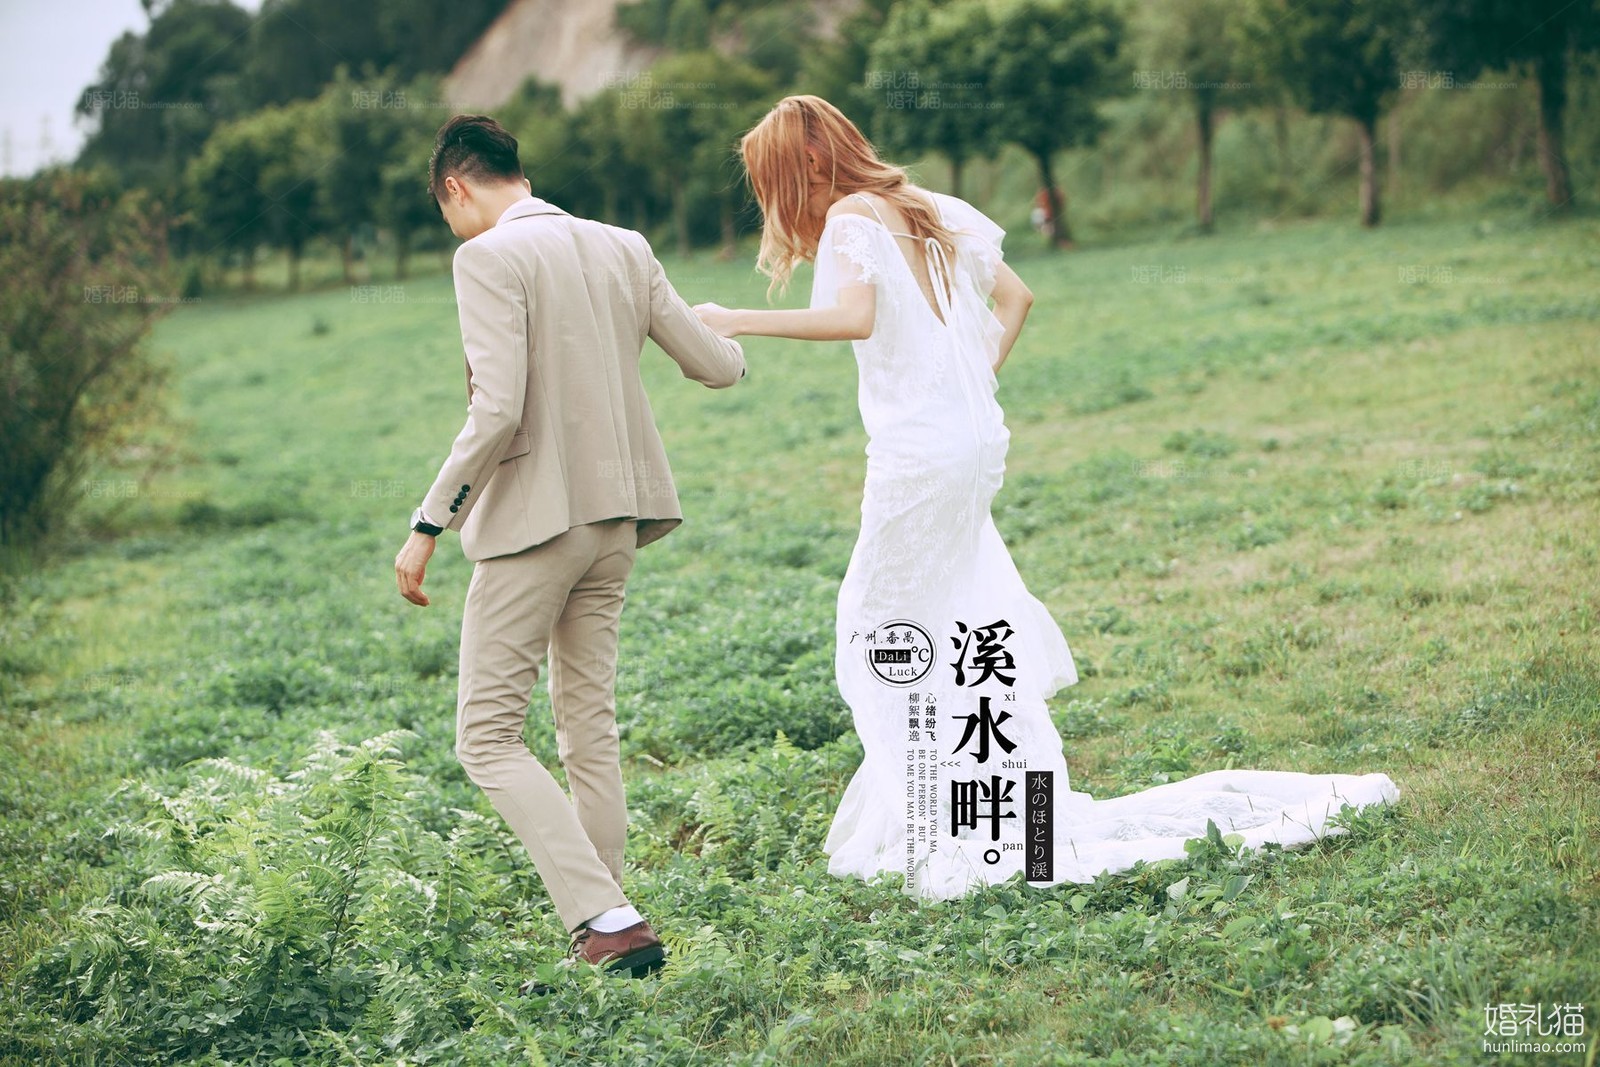 2017年7月广州婚纱照,,茂名婚纱照,婚纱照图片